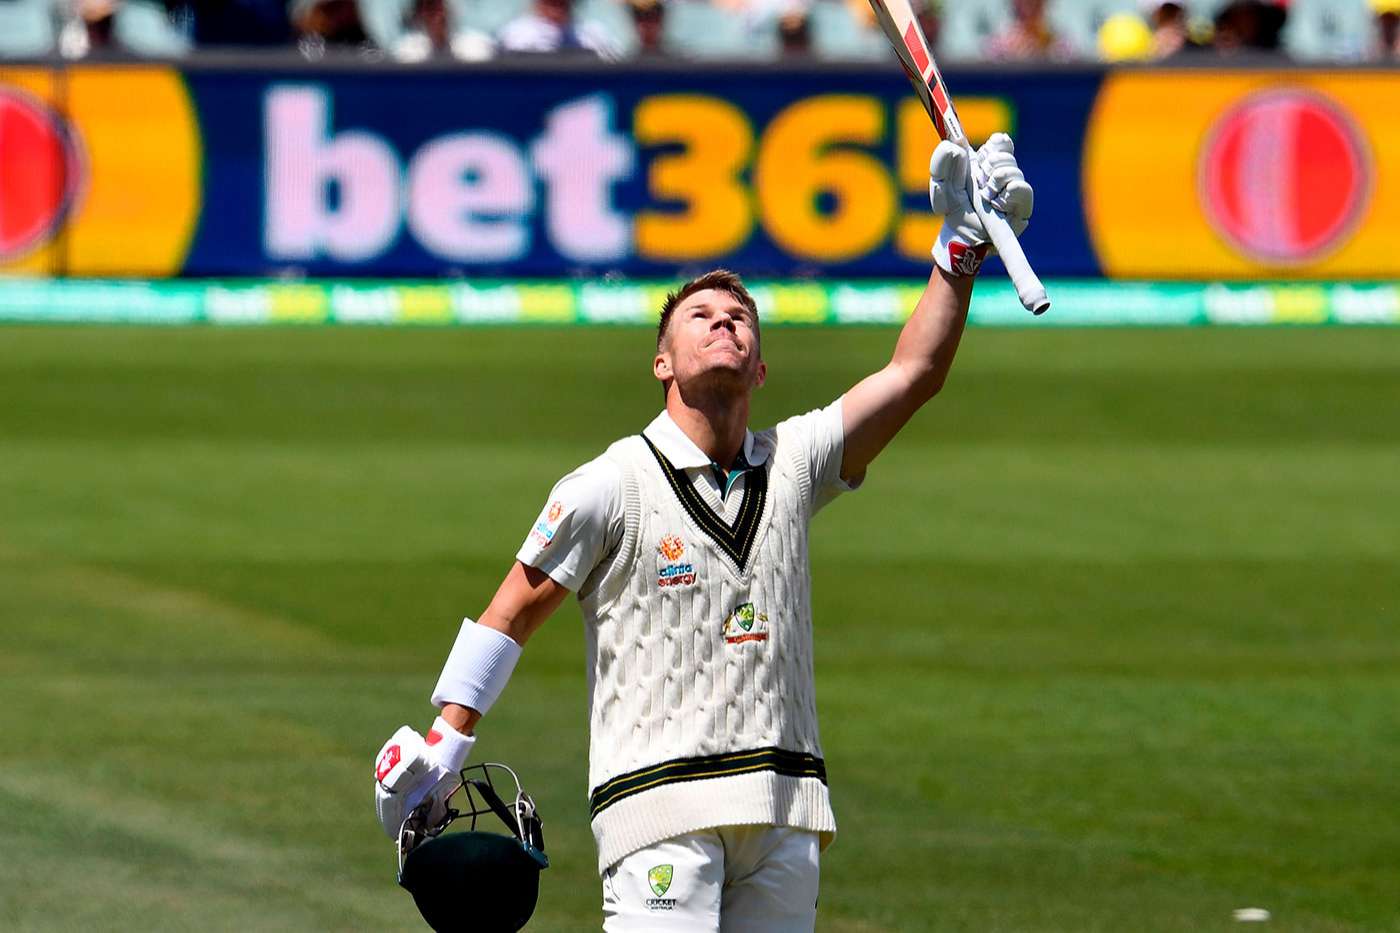 टेस्ट क्रिकेटमा डेभिड वार्नरले रचे इतिहास, ३ सय रन पूरा गरेपछि बल्ल हाने छक्का